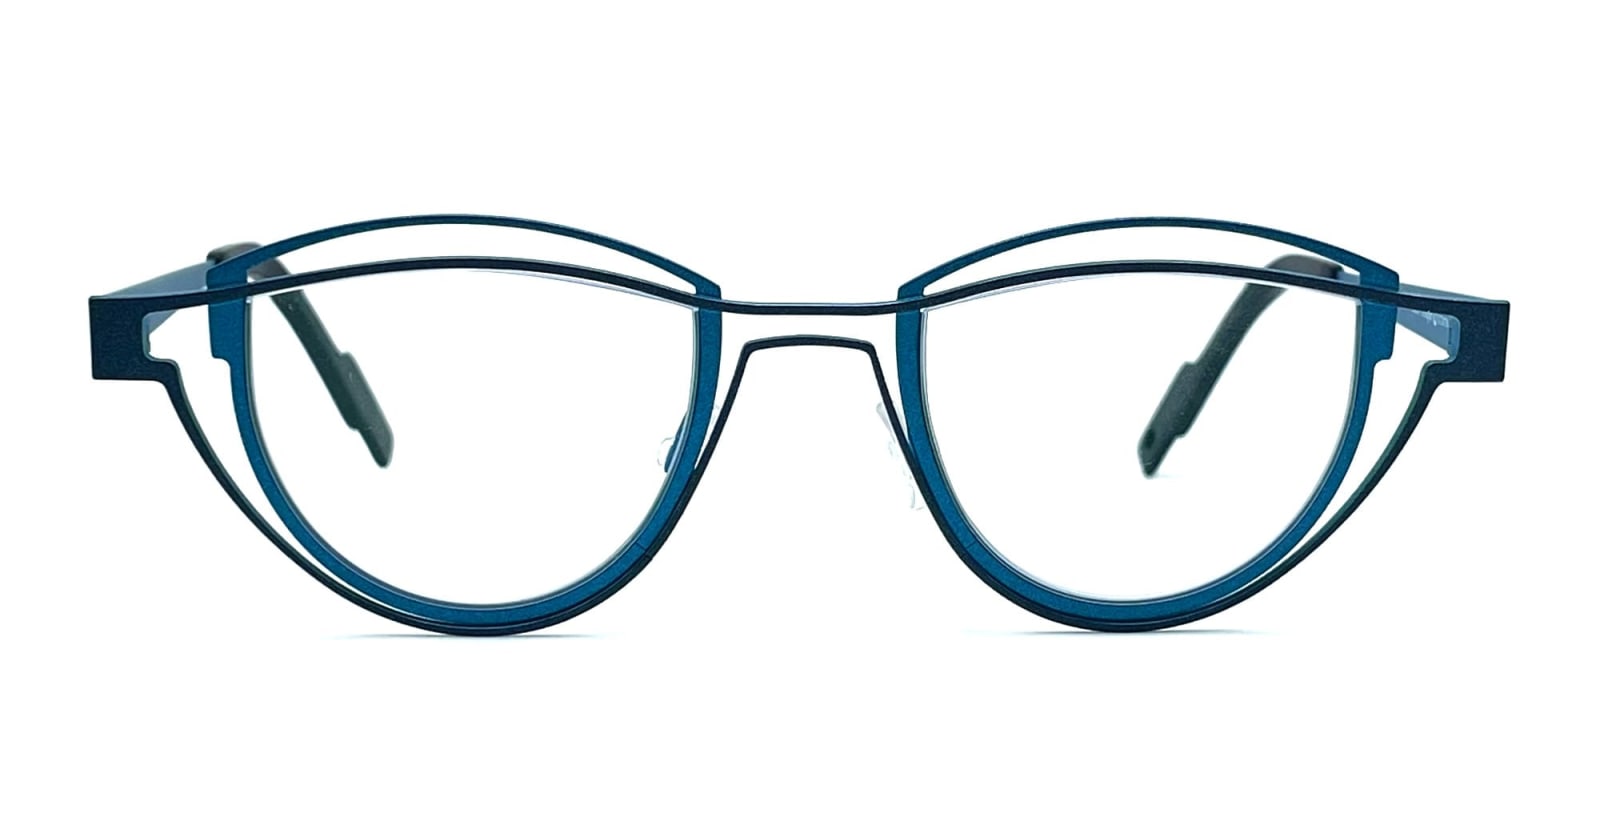 theo eyewear shape - 313 glasses